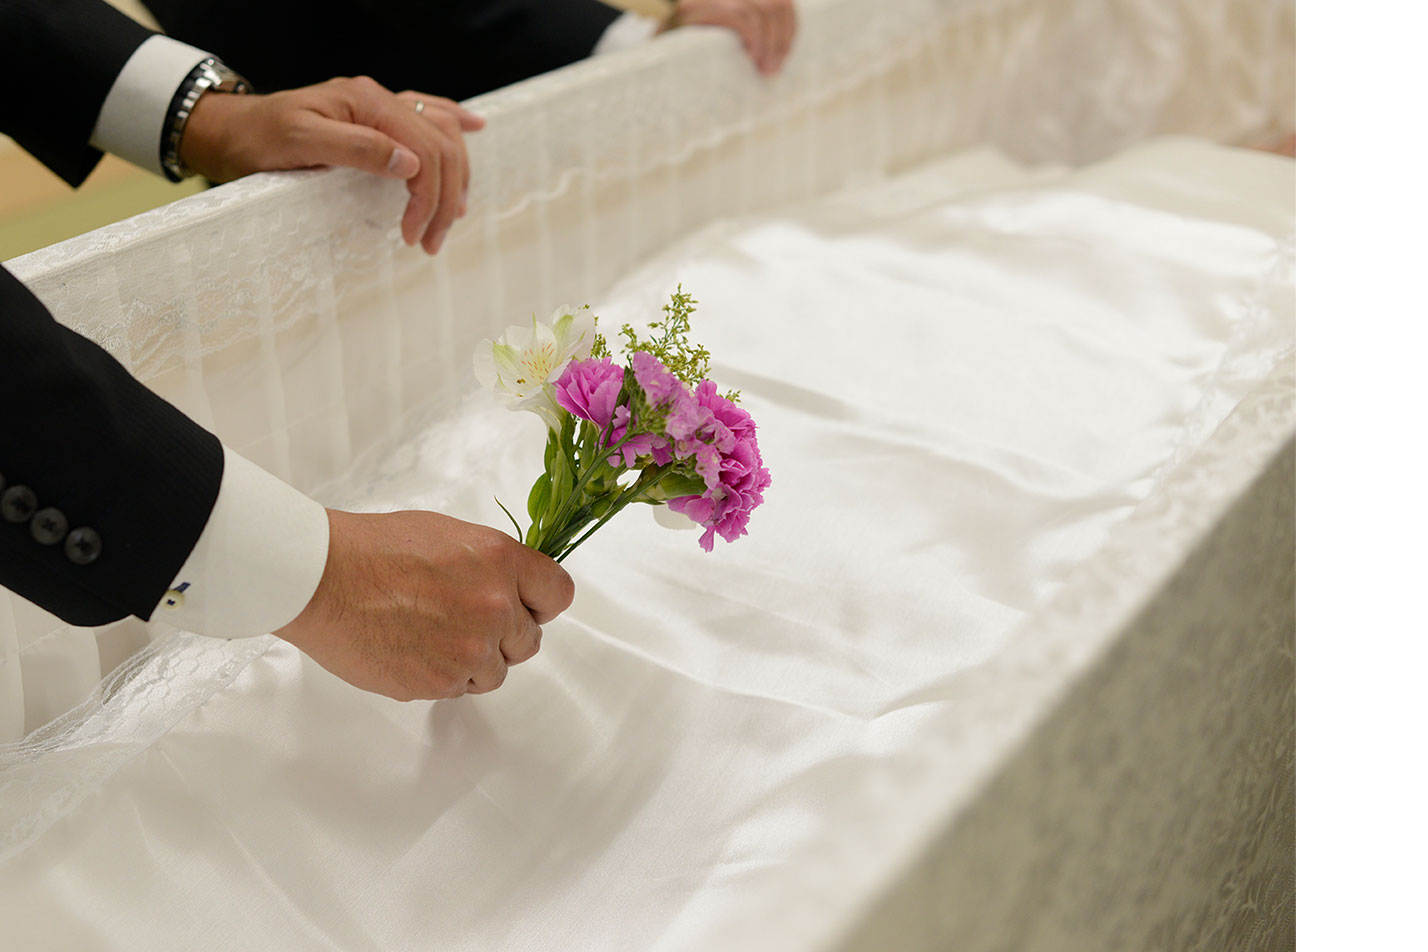  石巻市における家族葬の流れとは？のイメージ画像